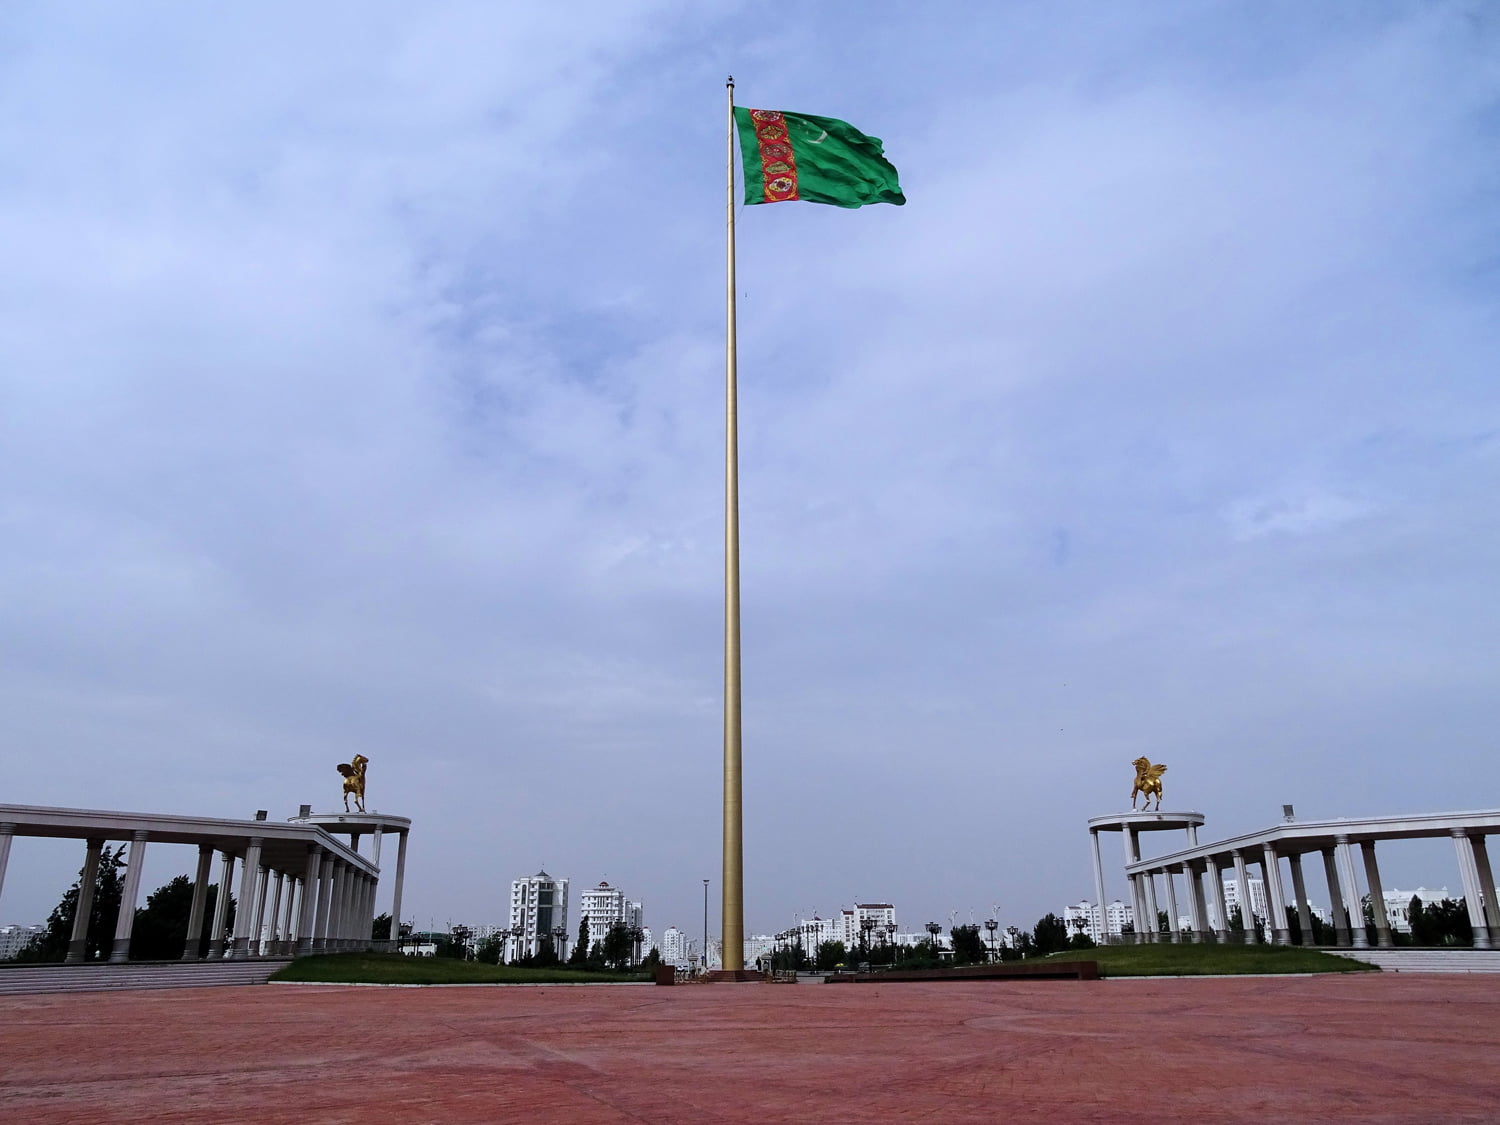 Ashgabatin lipputanko on yksi maailman korkeimmista, 133 metriä korkea. Se pystytettiin vuonna 2008. KUVA: BJØRN CHRISTIAN TØRRISSEN, WIKIMEDIA COMMONS